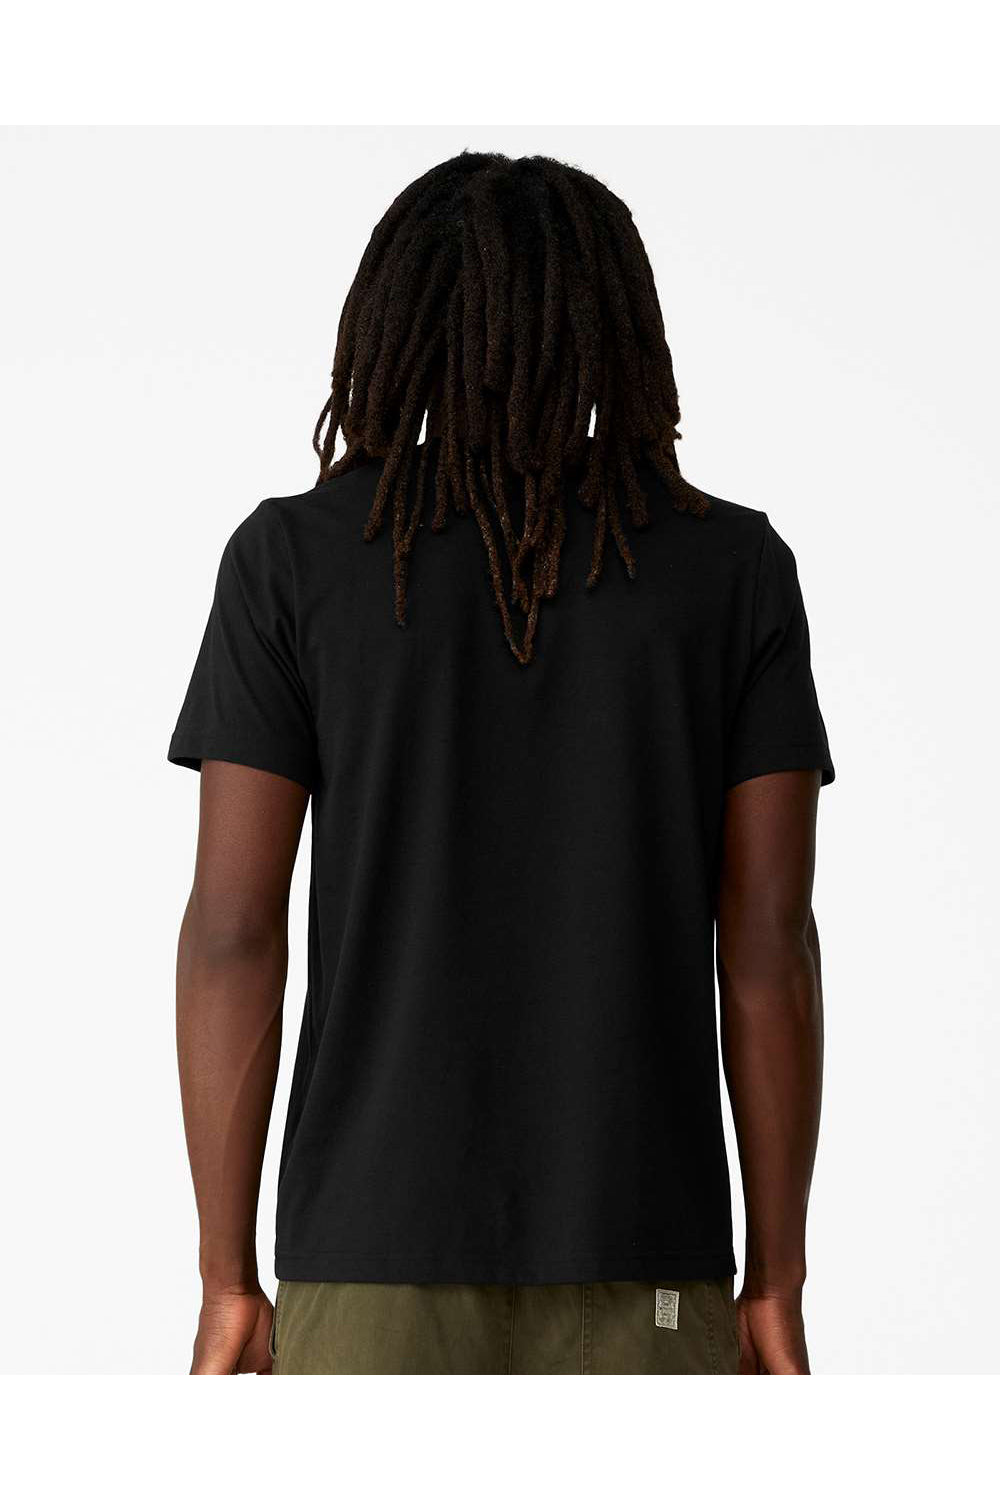 Bella + Canvas 3001ECO Mens EcoMax Short Sleeve Crewneck T-Shirt Black Model Back